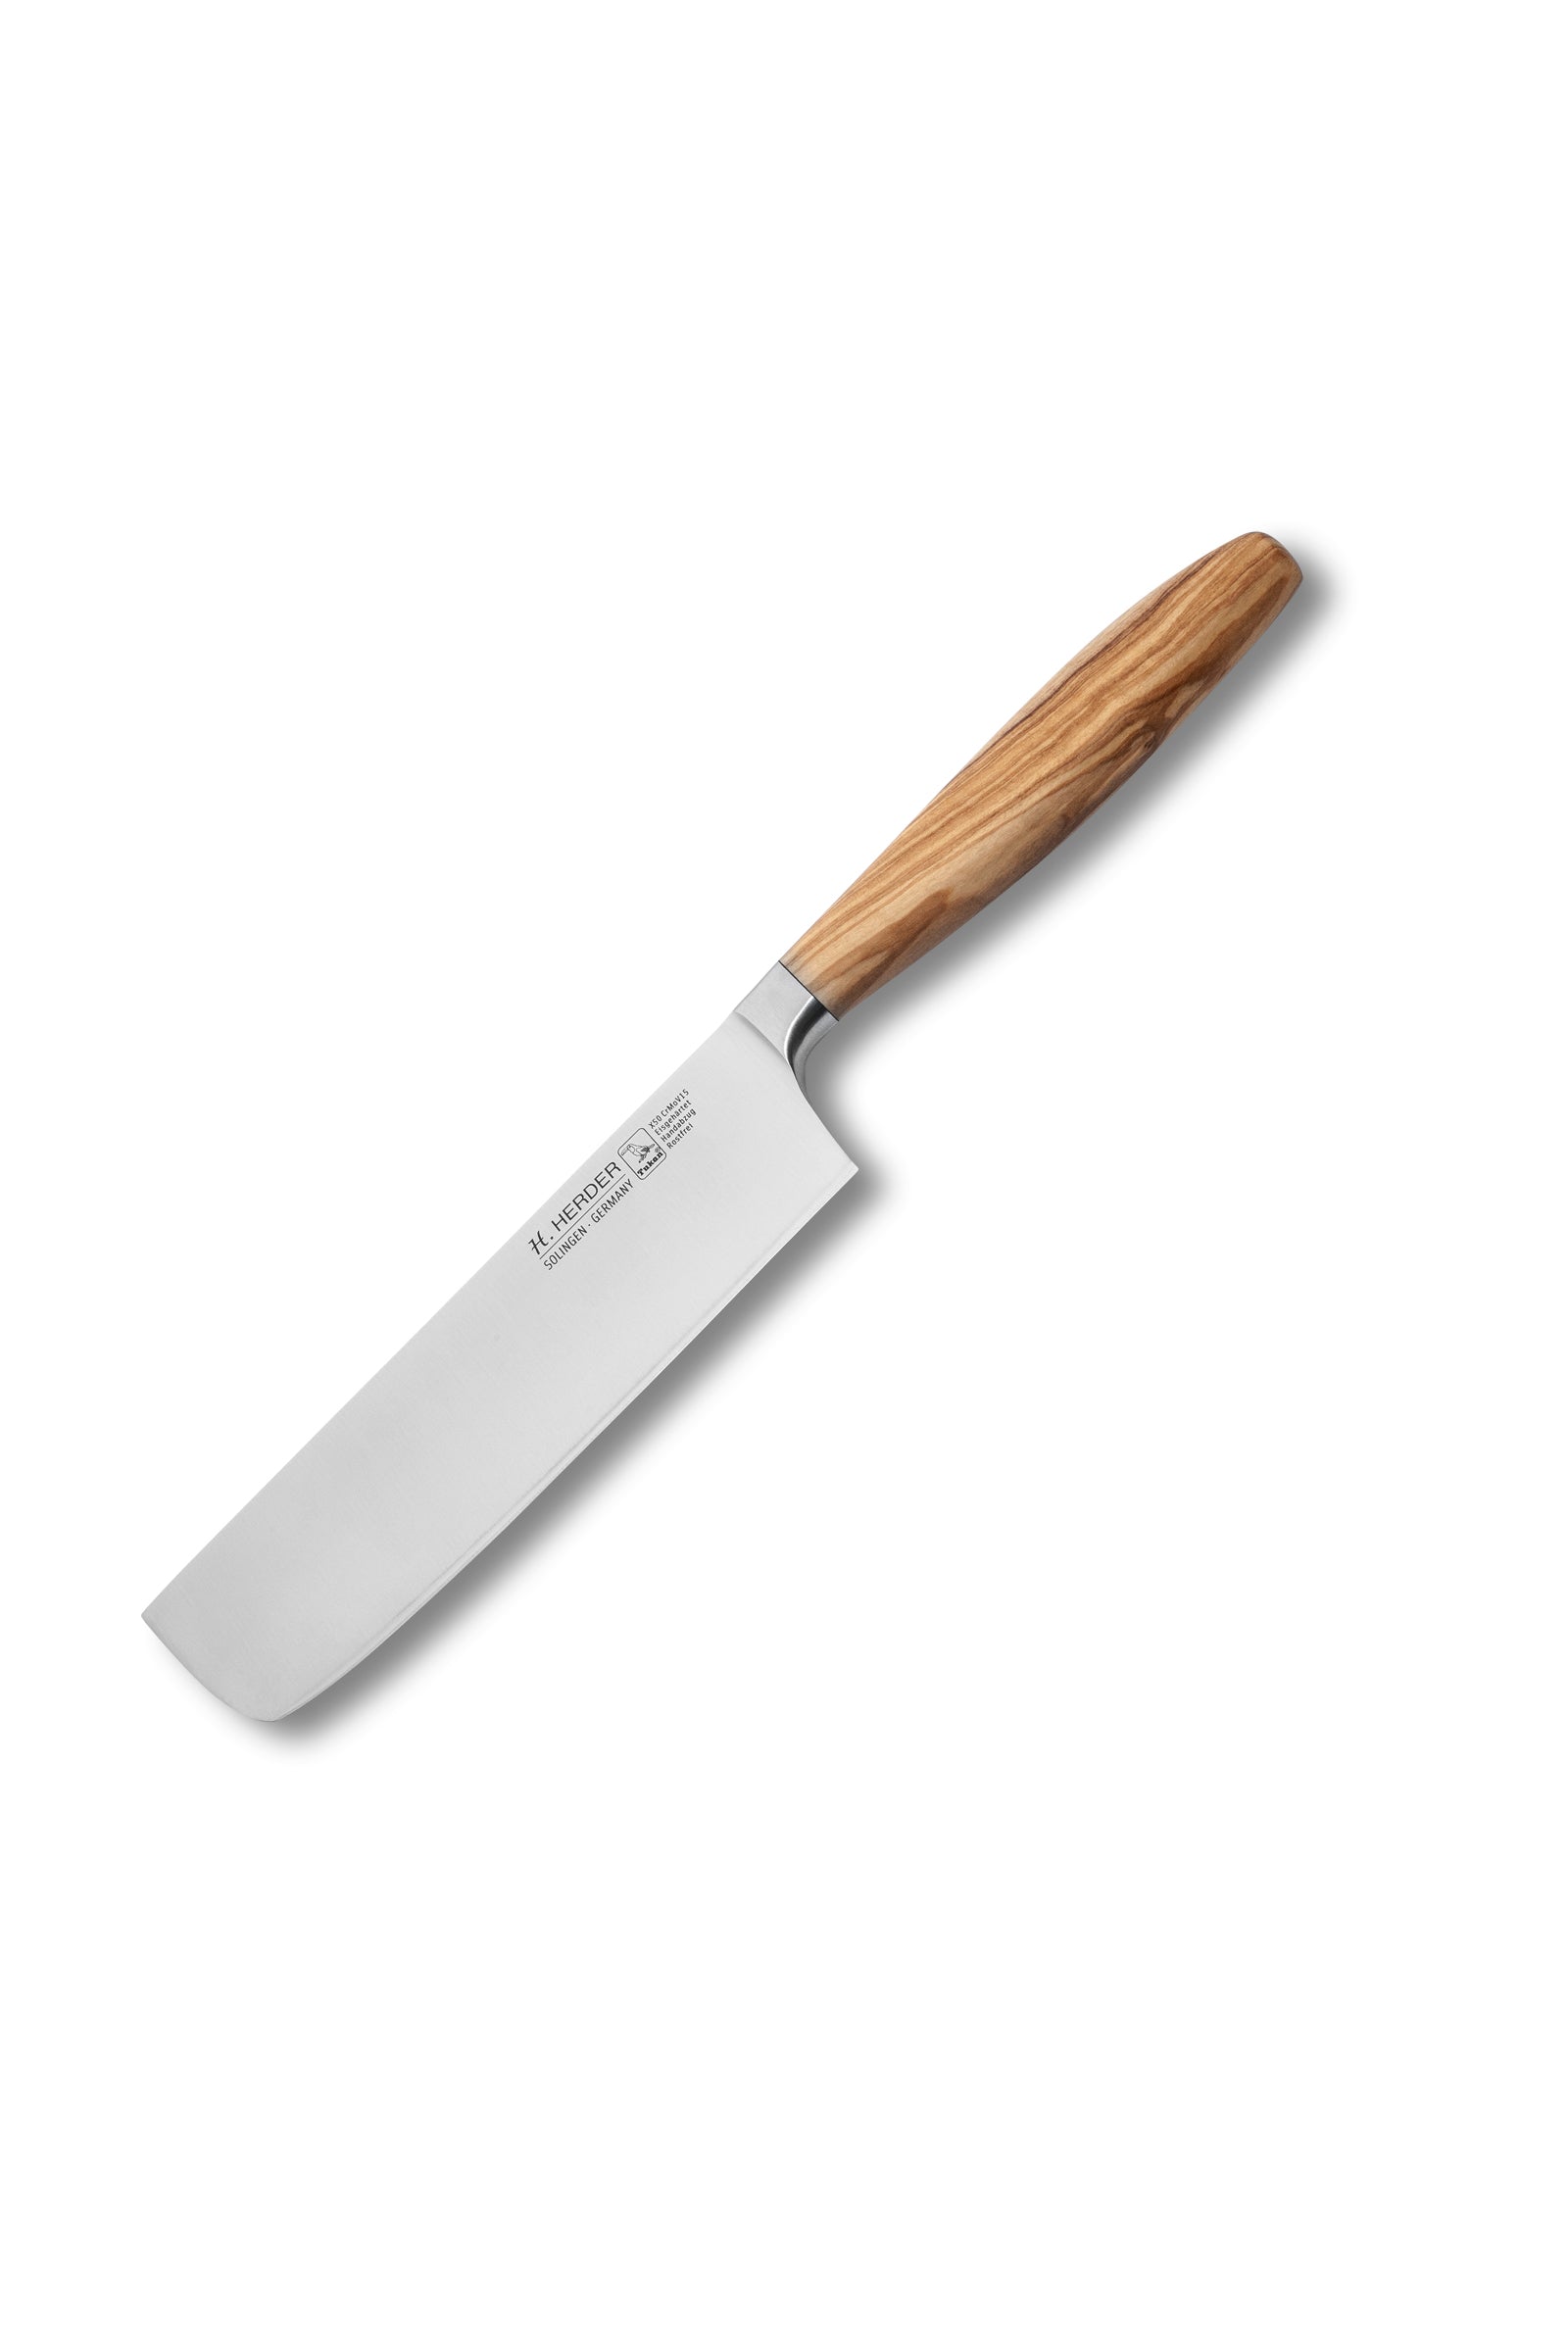 Nakiri knife Eterno, olive wood, blade length 17cm, forged